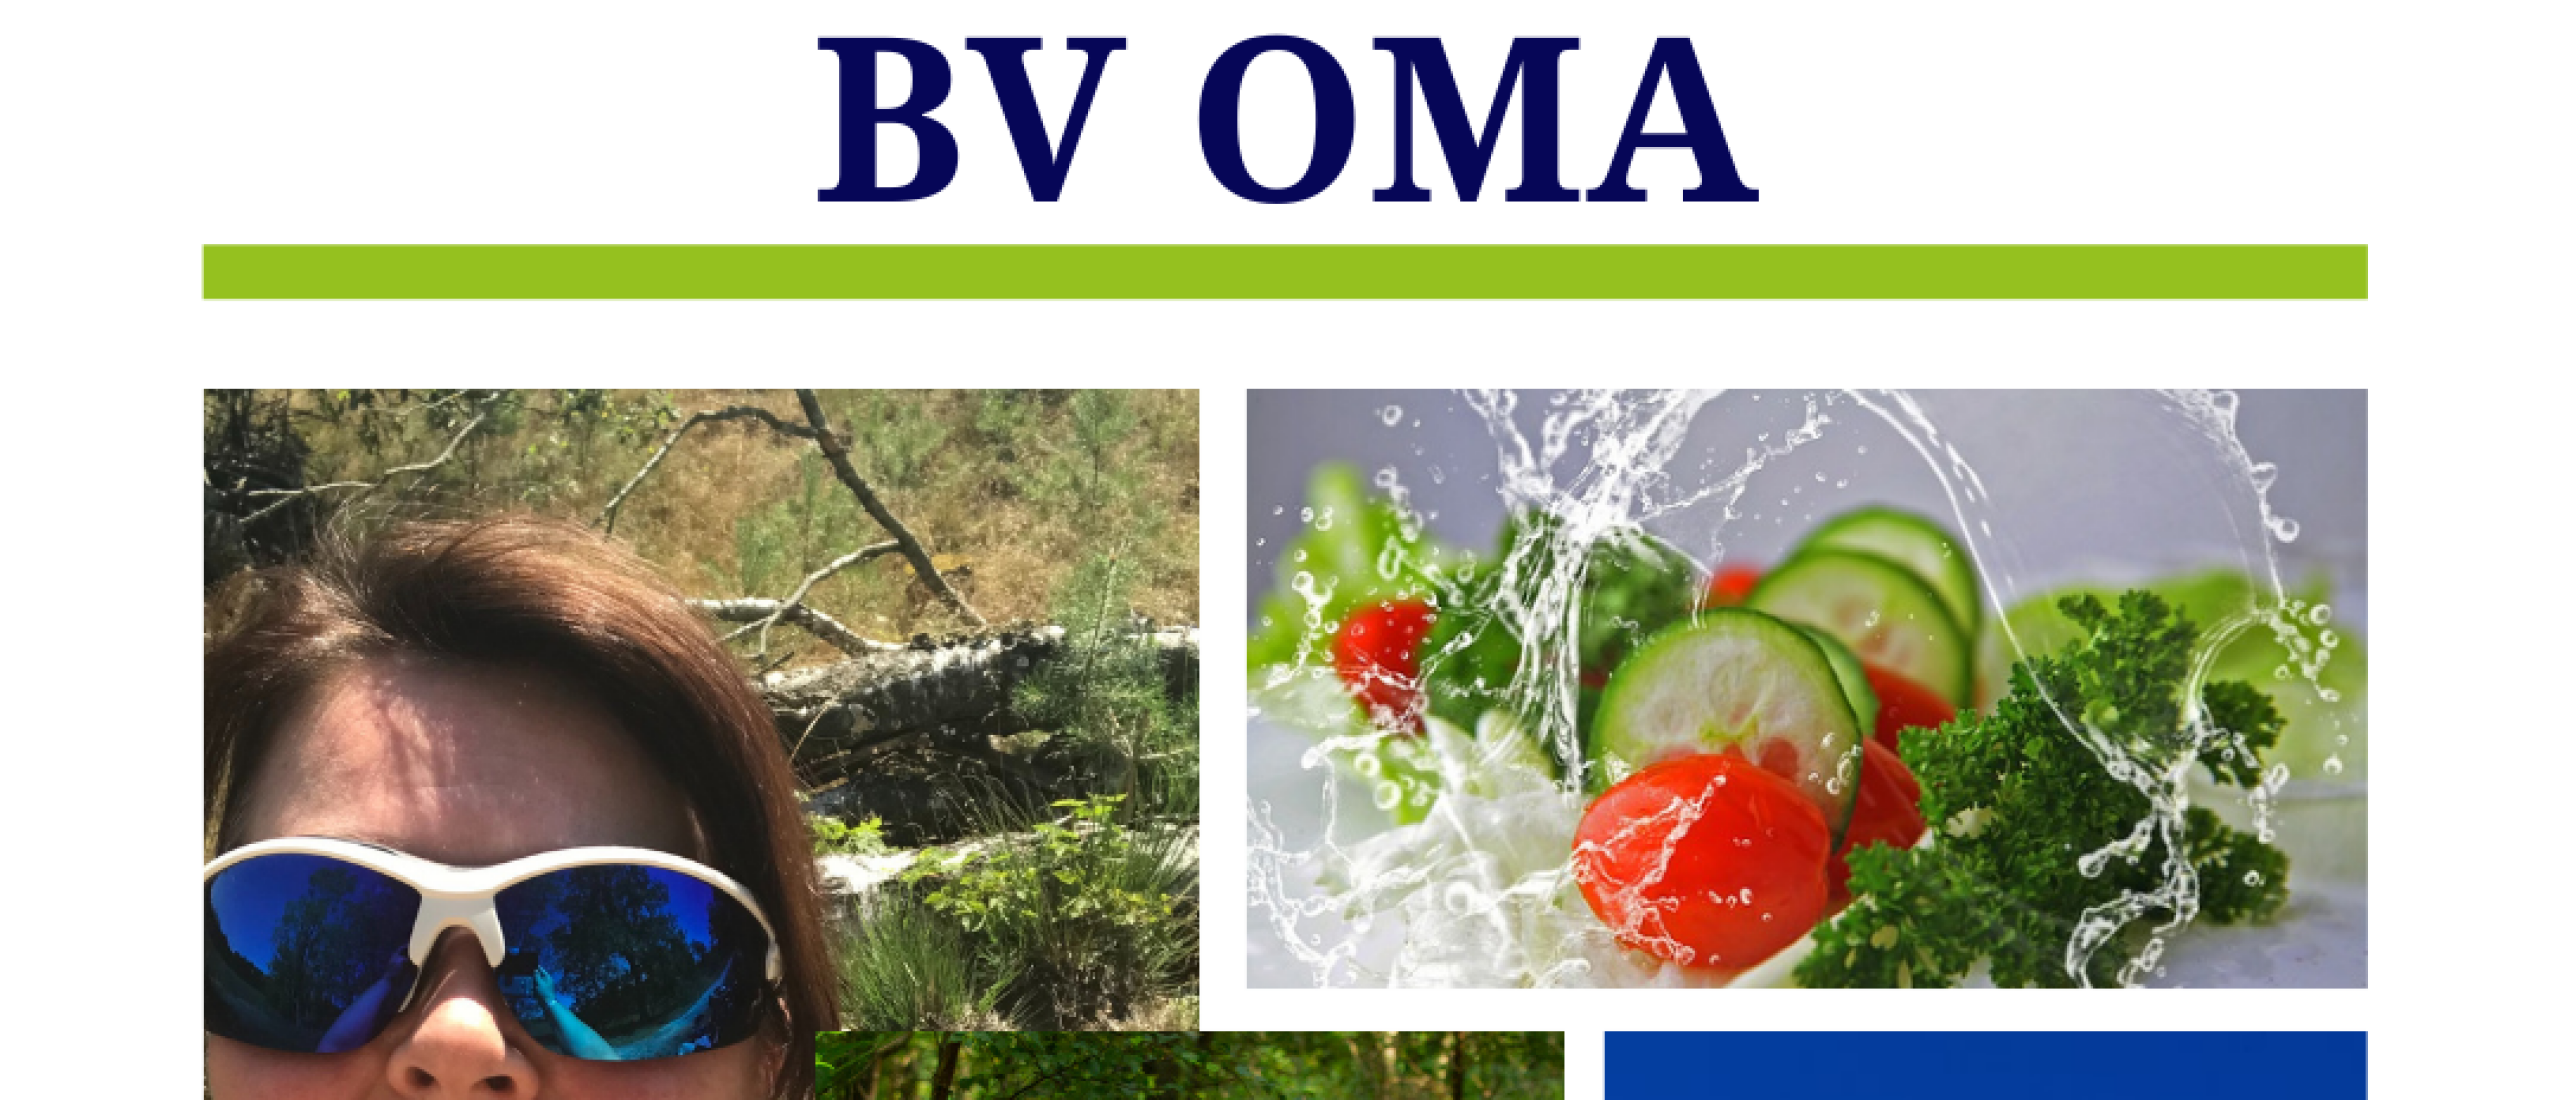 Met de BV-OMA is vitaliteit rete goed zorgen voor jezelf net als een topsporter